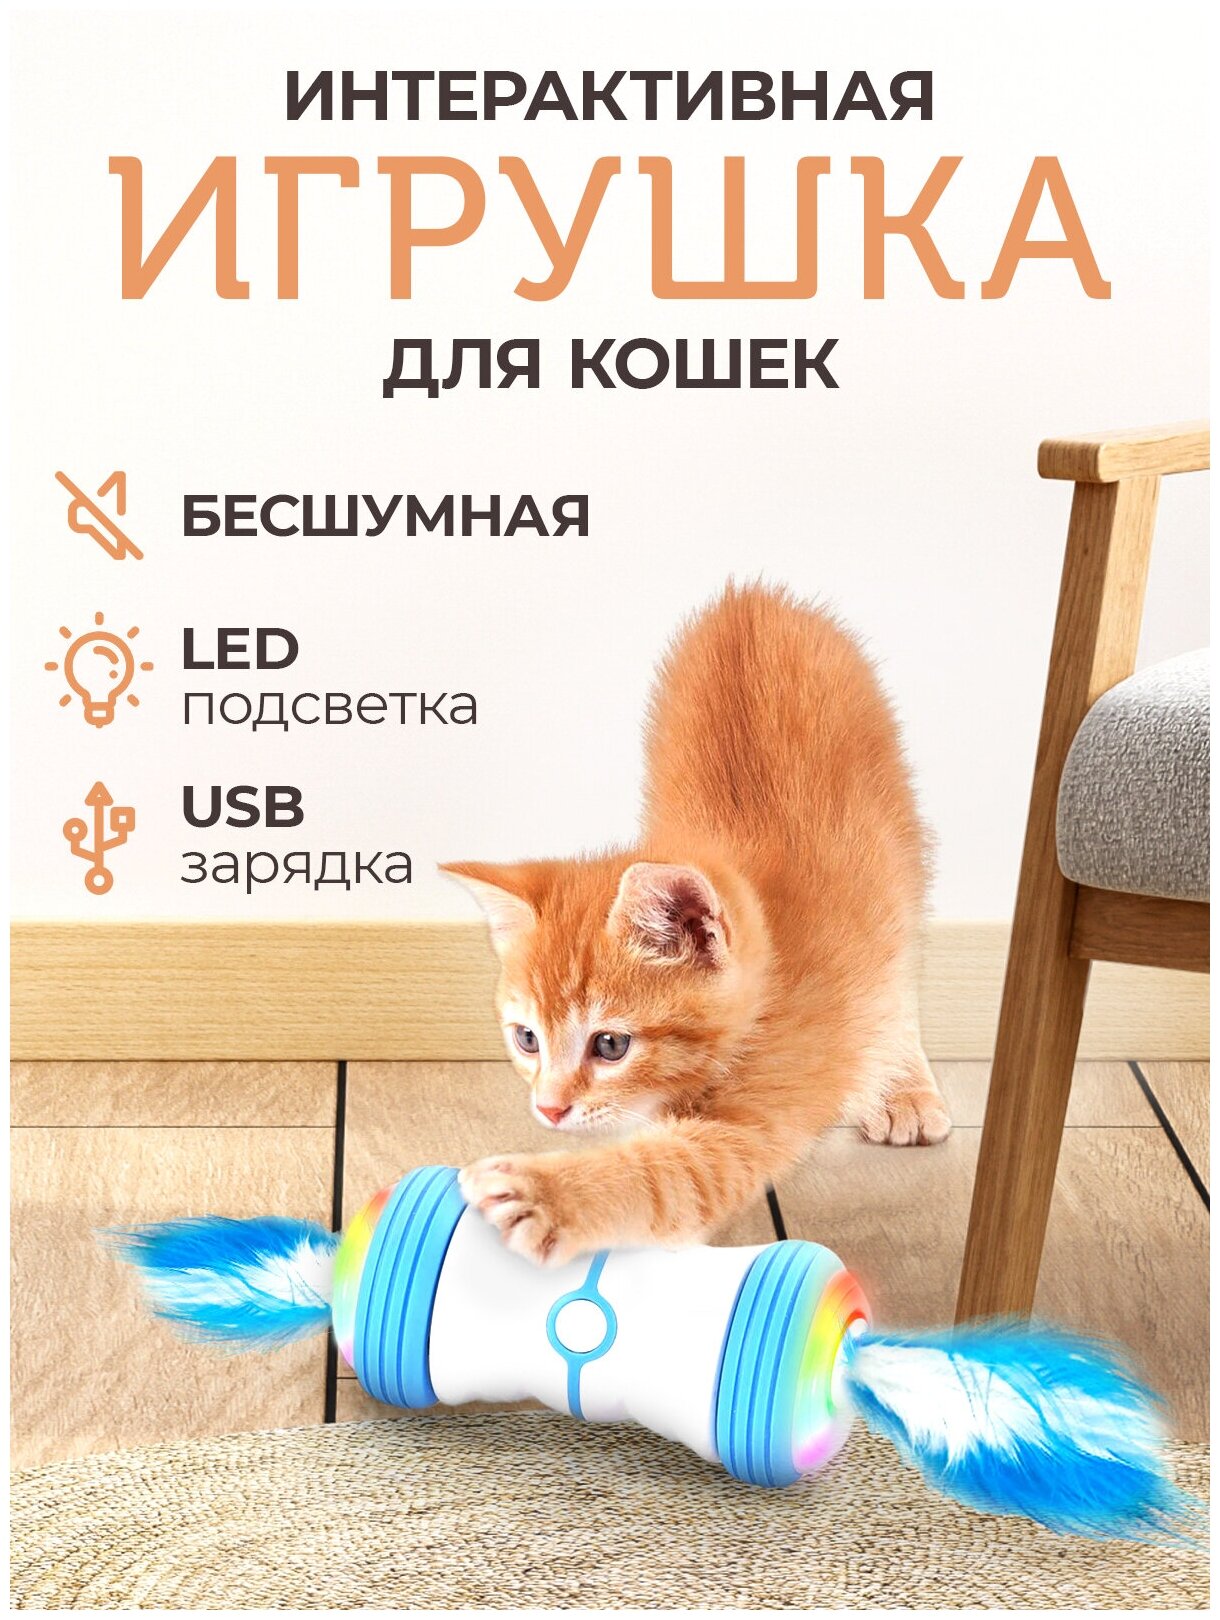 Интерактивная игрушка для кошек дразнилка с перьями